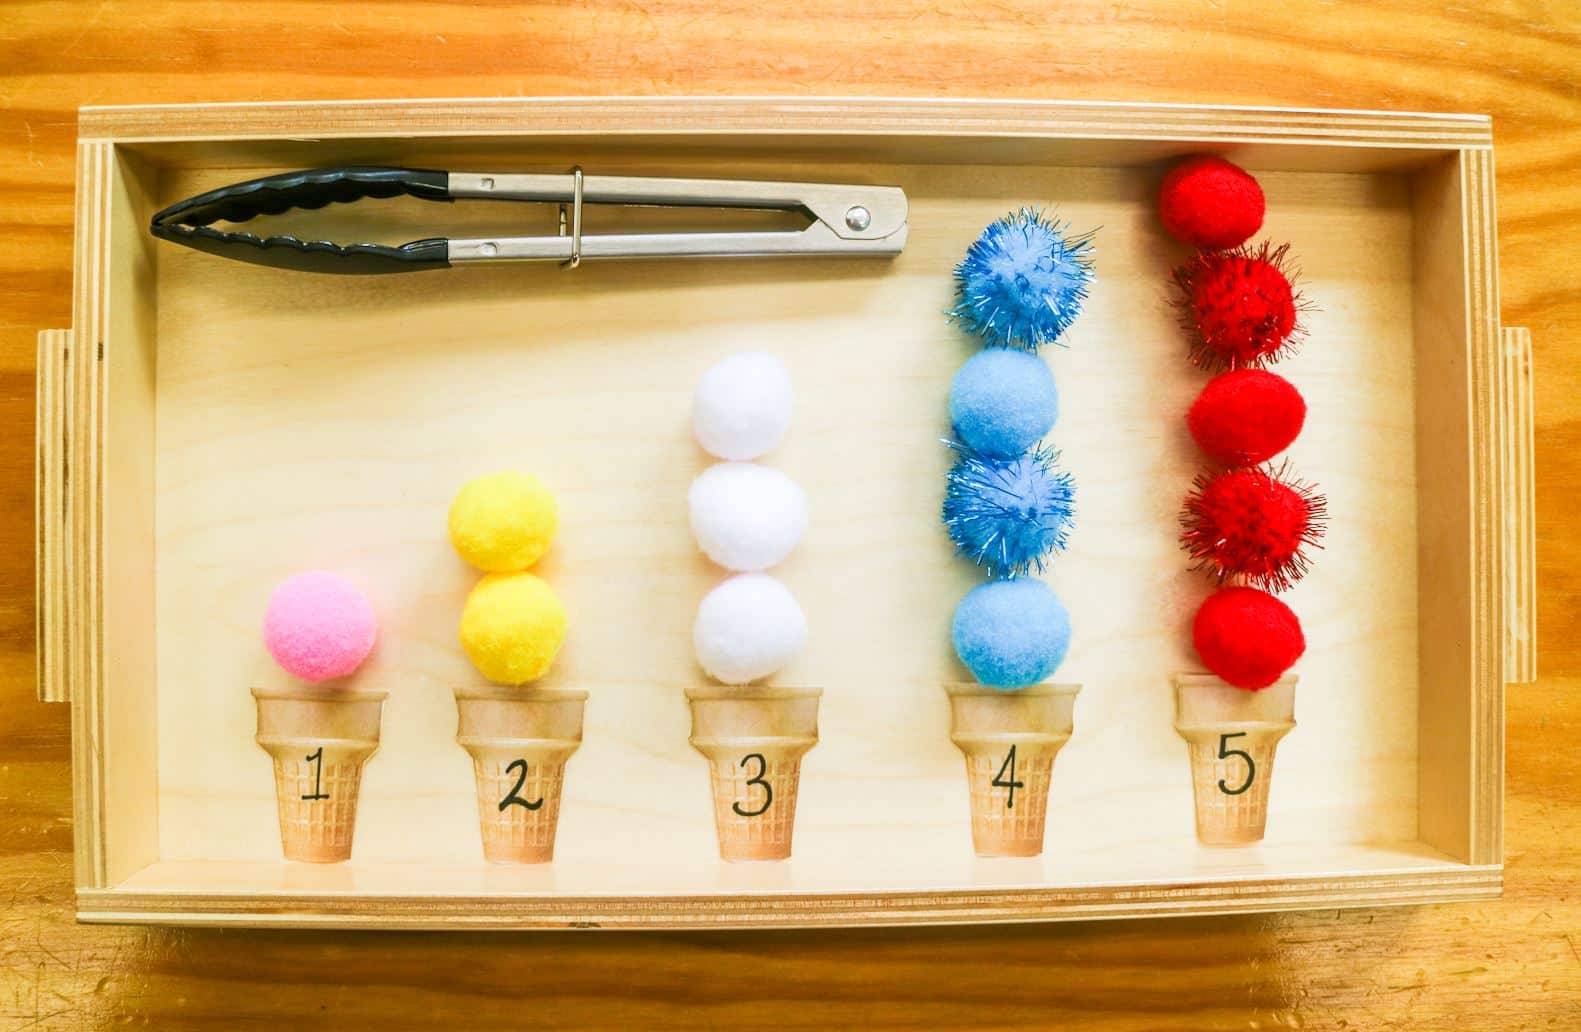 Summer Mathematics Ice Cream Tray - Montessori Academy